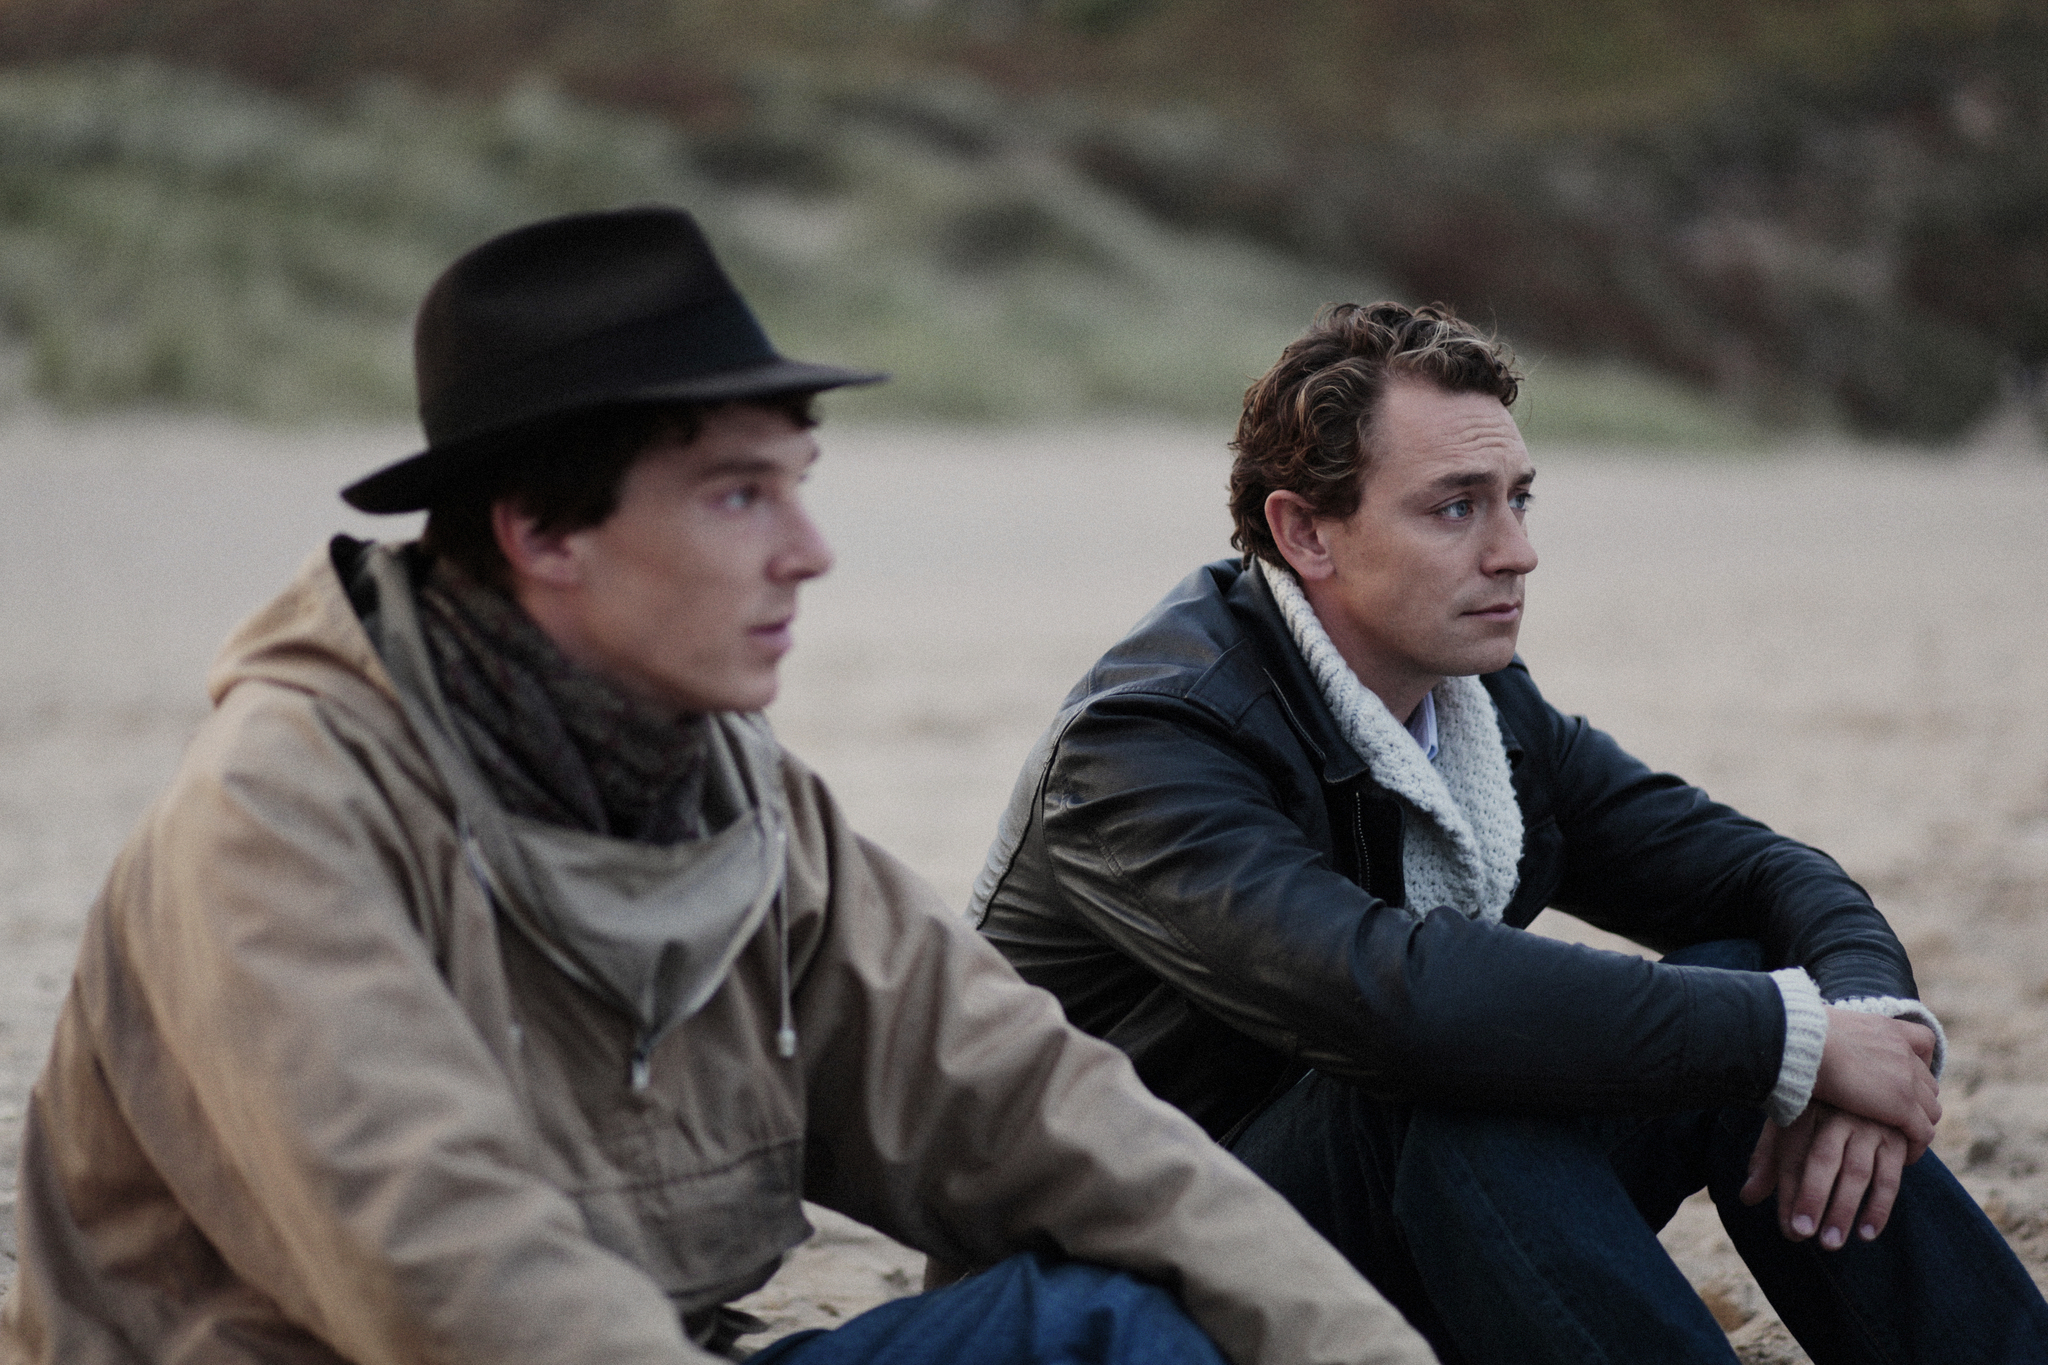 Still of JJ Feild and Benedict Cumberbatch in Third Star (2010)